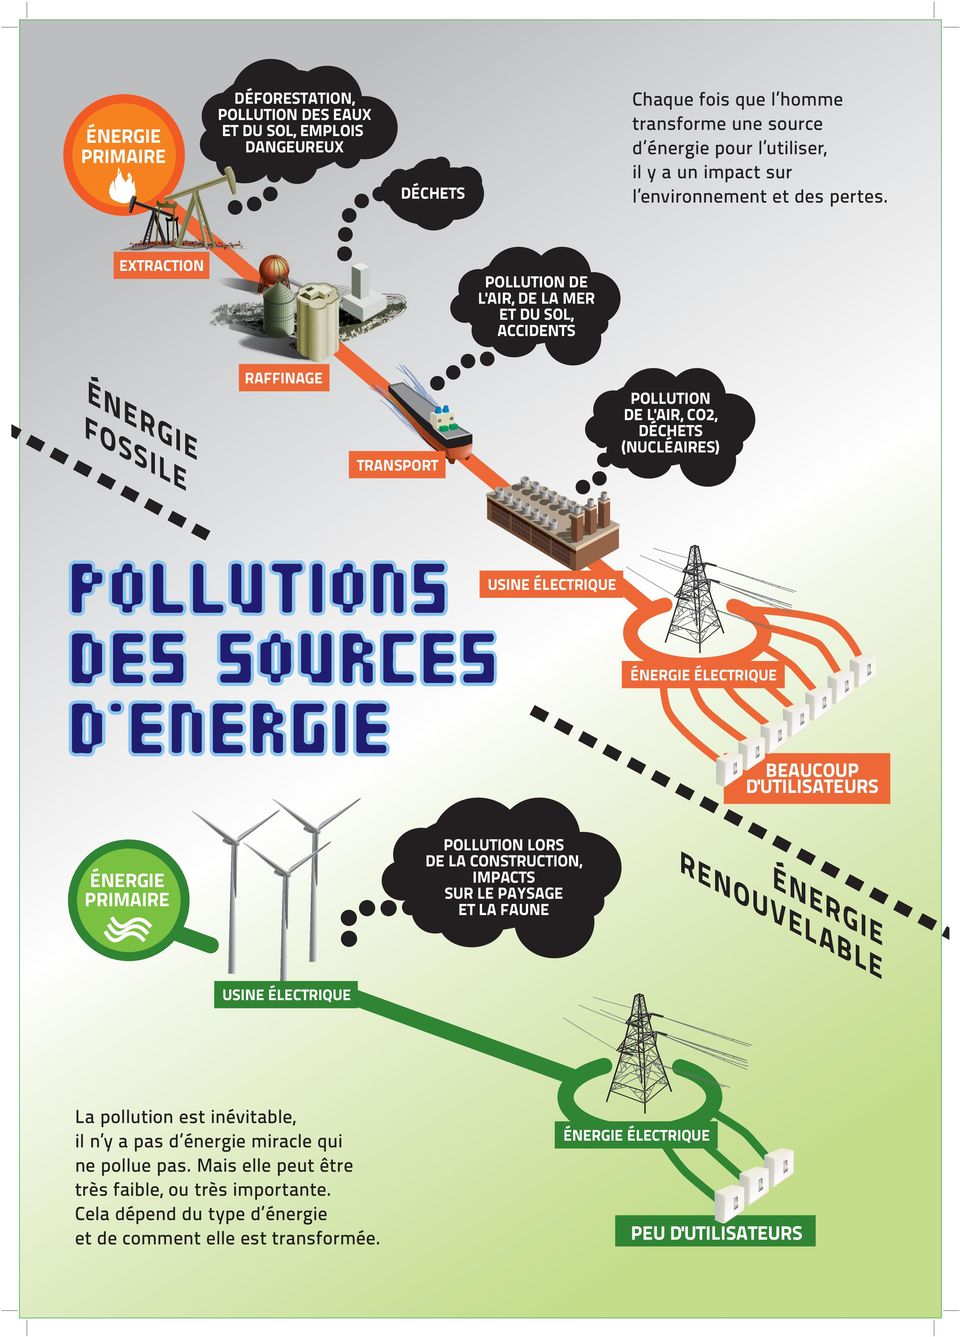 EXTRACTION POLLUTION DE L'AIR, DE LA MER ET DU SOL, ACCIDENTS ÉNERGIE FOSSILE RAFFINAGE TRANSPORT POLLUTION DE L'AIR, CO2, DÉCHETS (NUCLÉAIRES) POLLUTIONS USINE ÉLECTRIQUE DES SOURCES D`ENERGIE